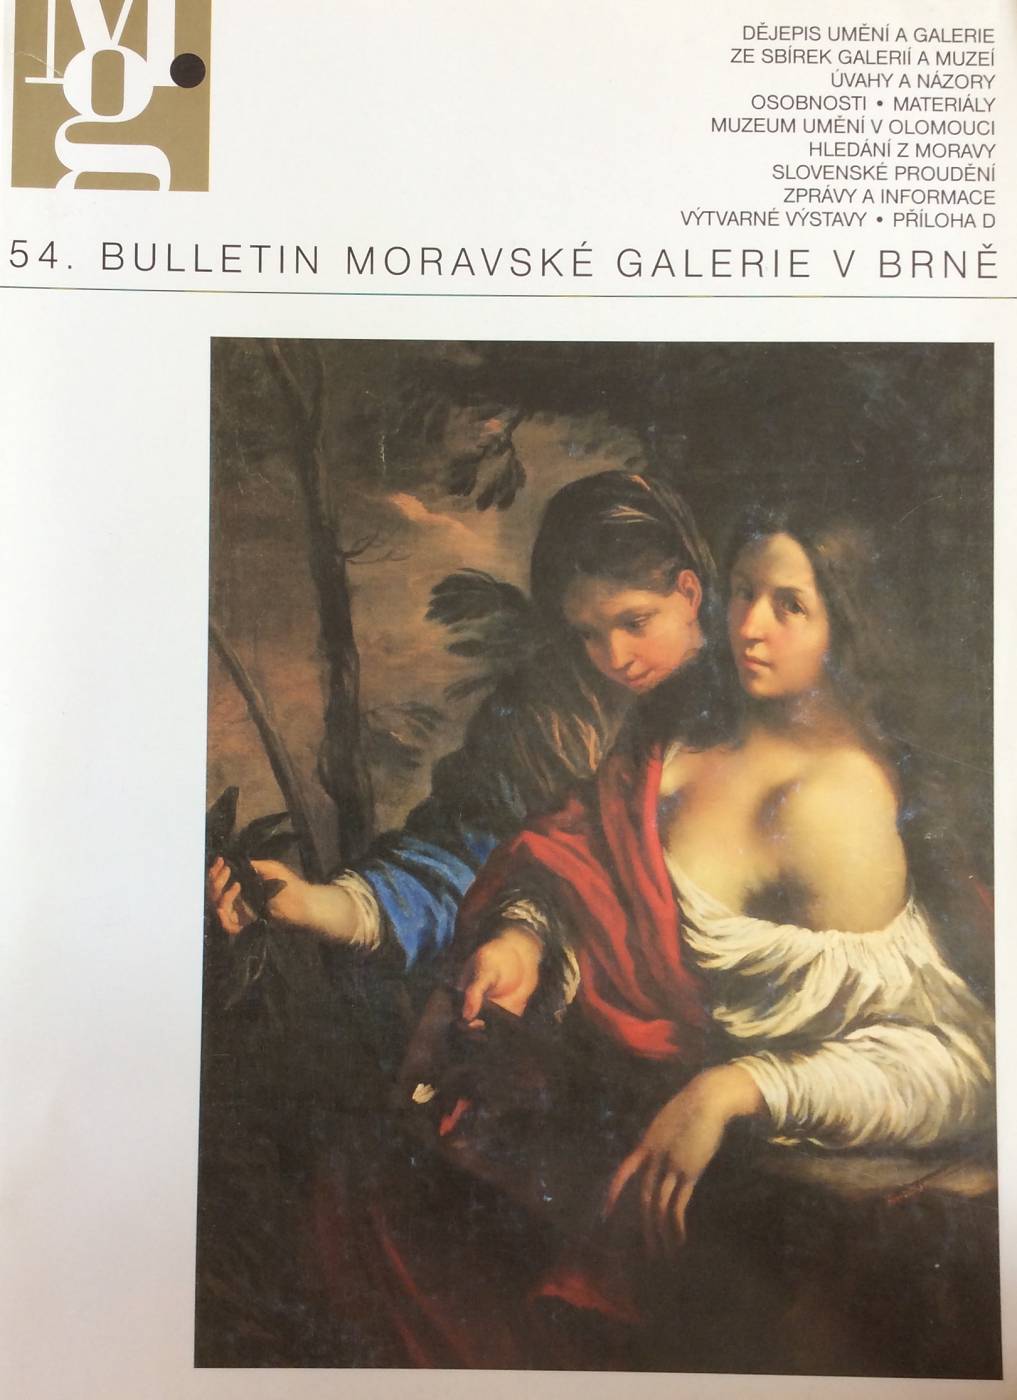 54. Bulletin Moravské galerie v Brně